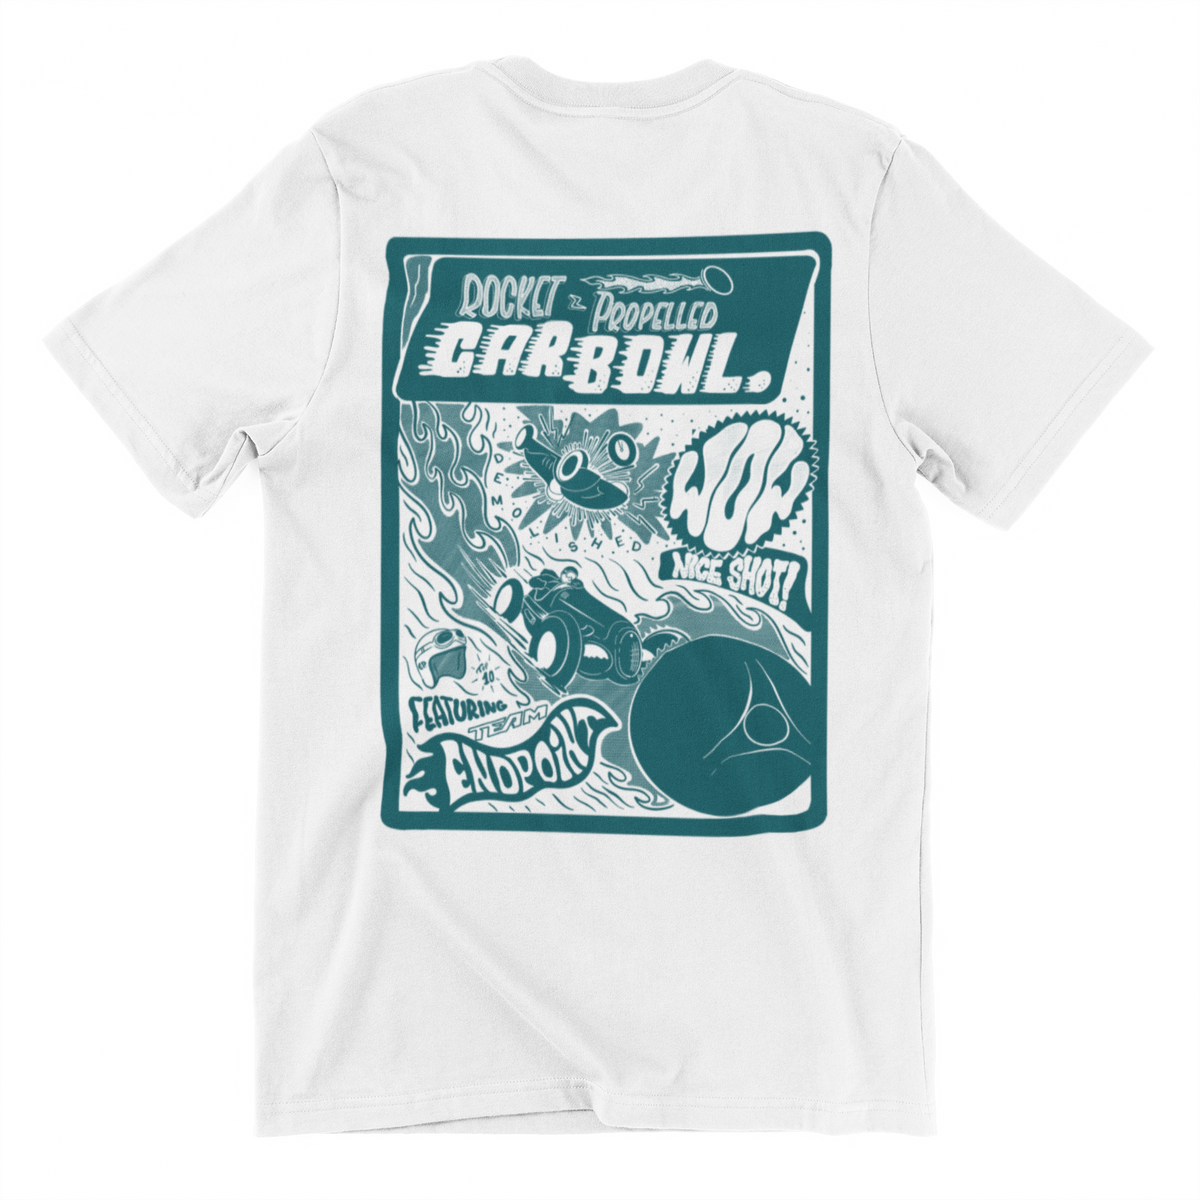 Rocket-Propelled Car Bowl T-shirt – M A T I C